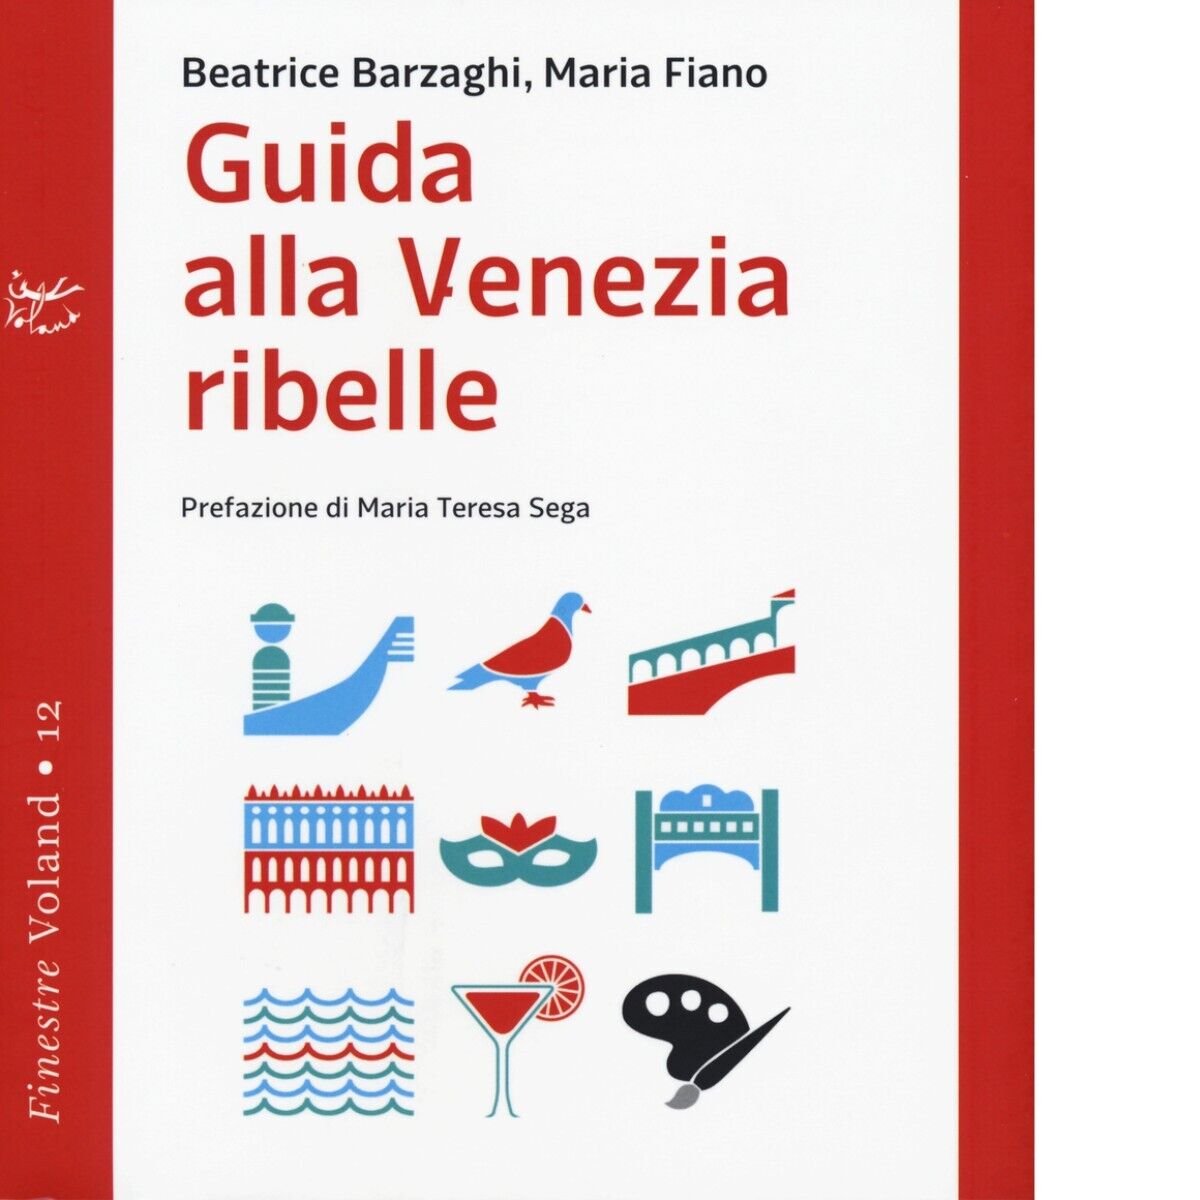 Guida alla Venezia ribelle di Beatrice Barzaghi, Maria Fiano, 2015-10, Voland